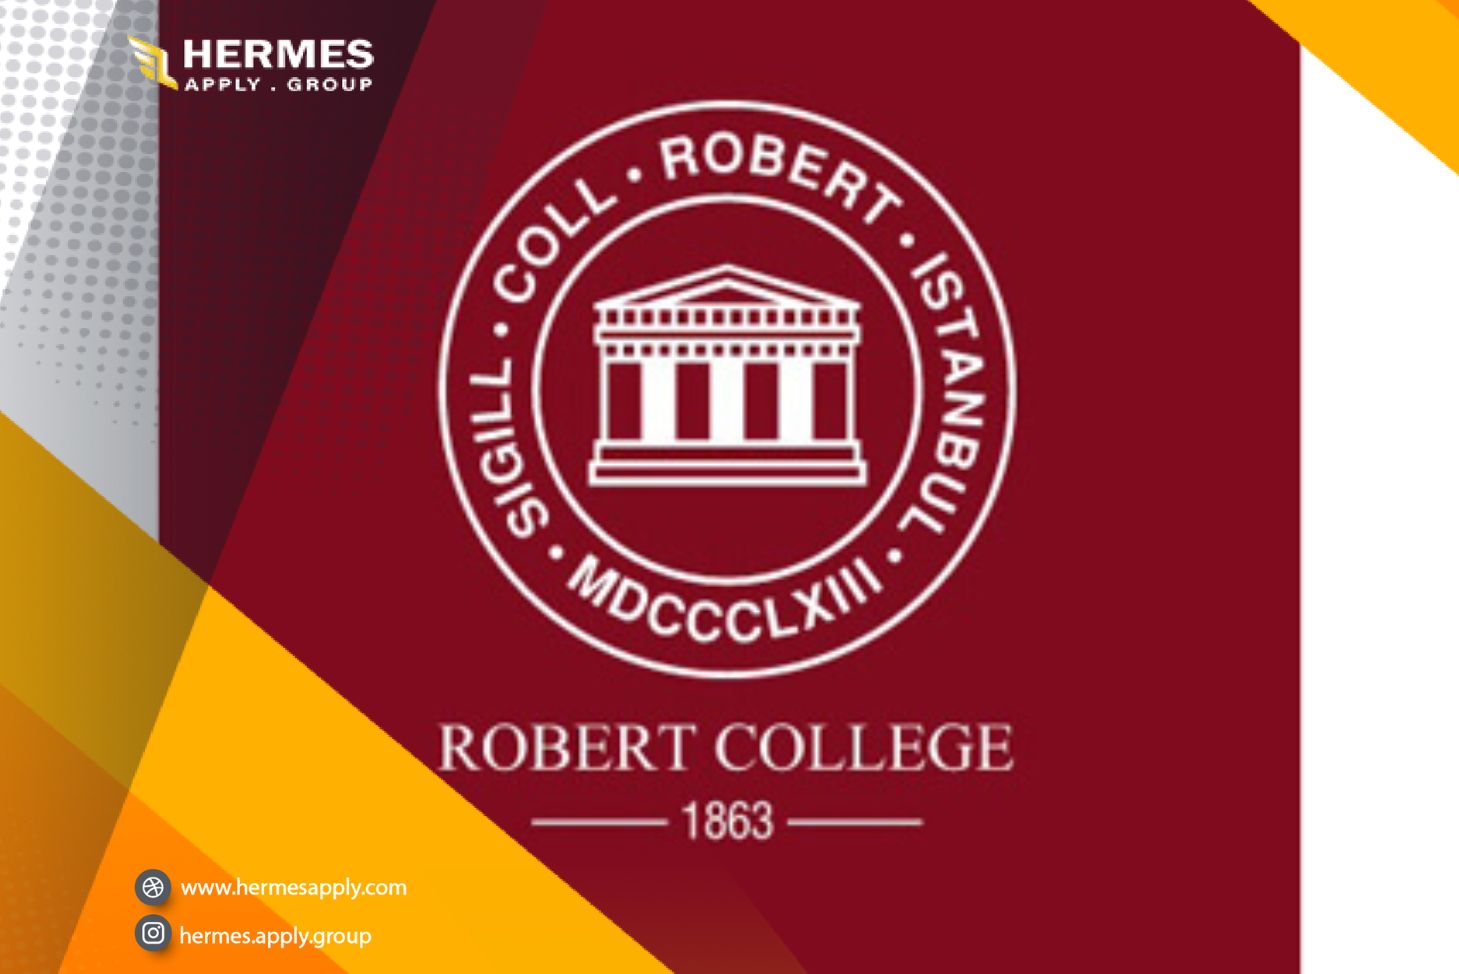 کالج امریکن رابرت American Robert College 